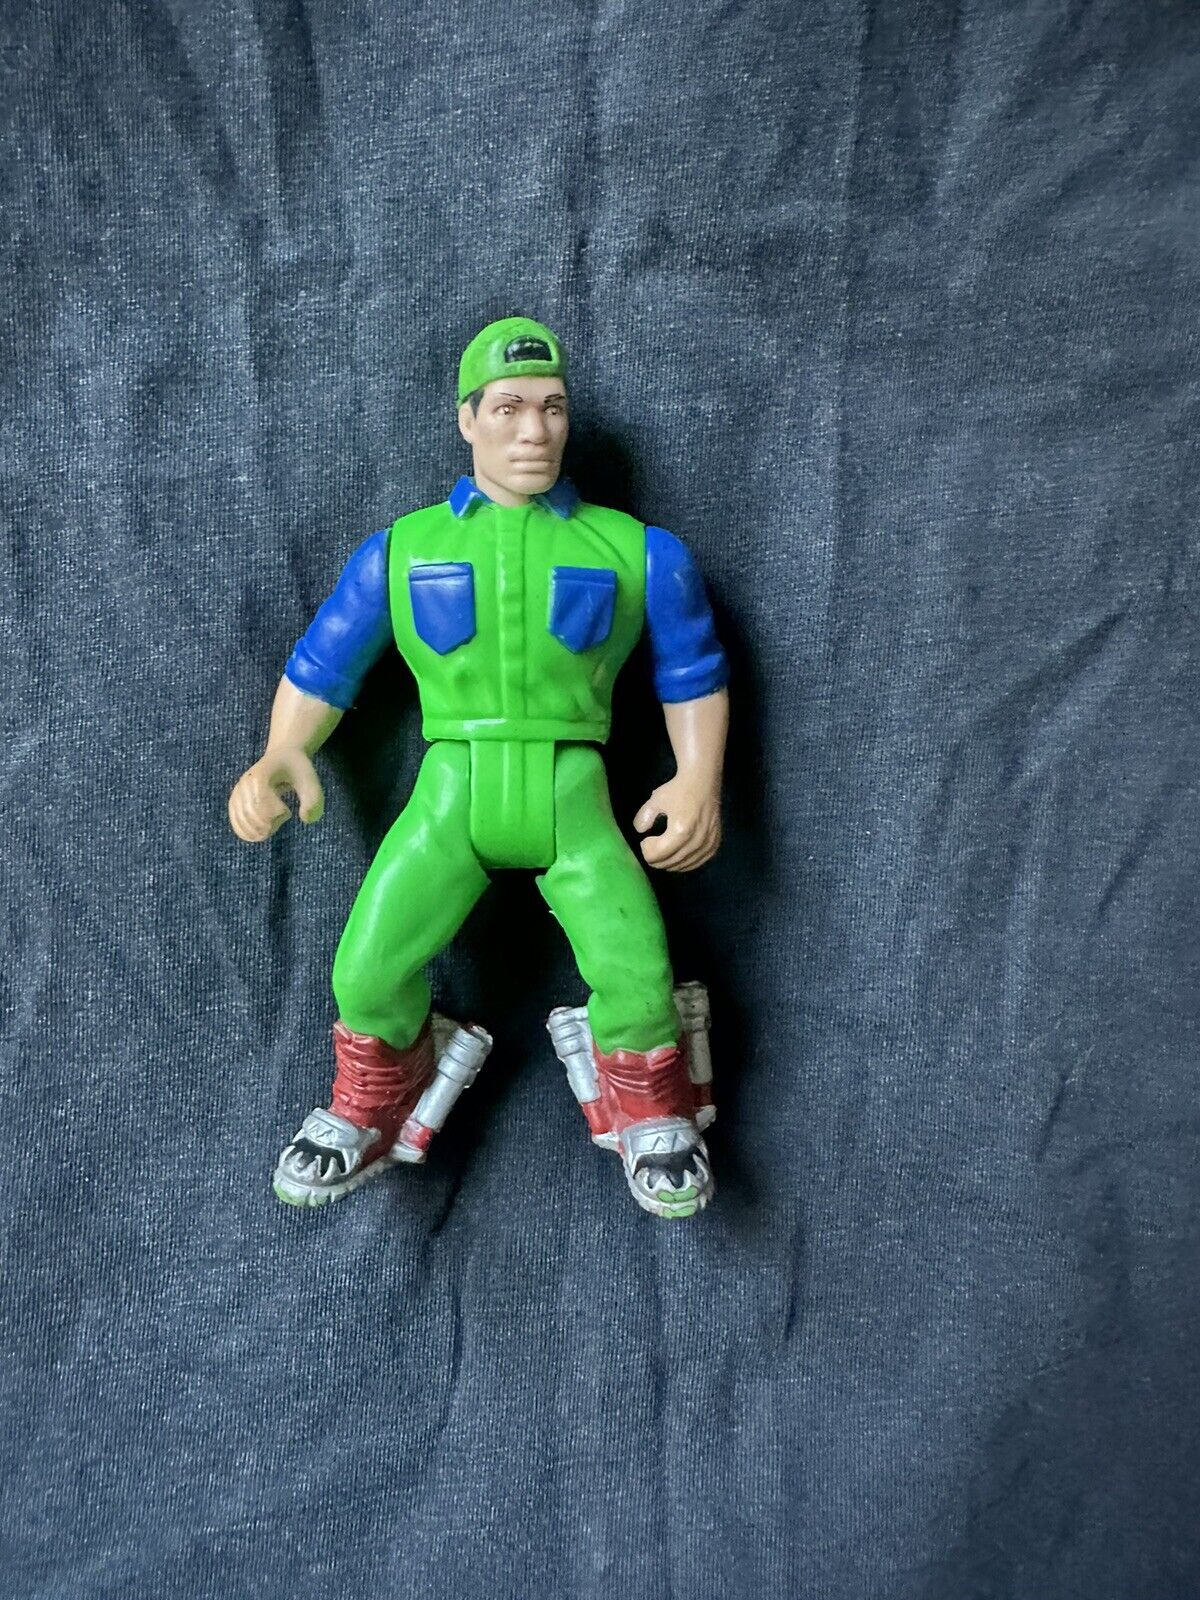 Vintage 1993 Super Mario Bros Action Figure Toy Luigi ERTL Nintendo Movie Rare